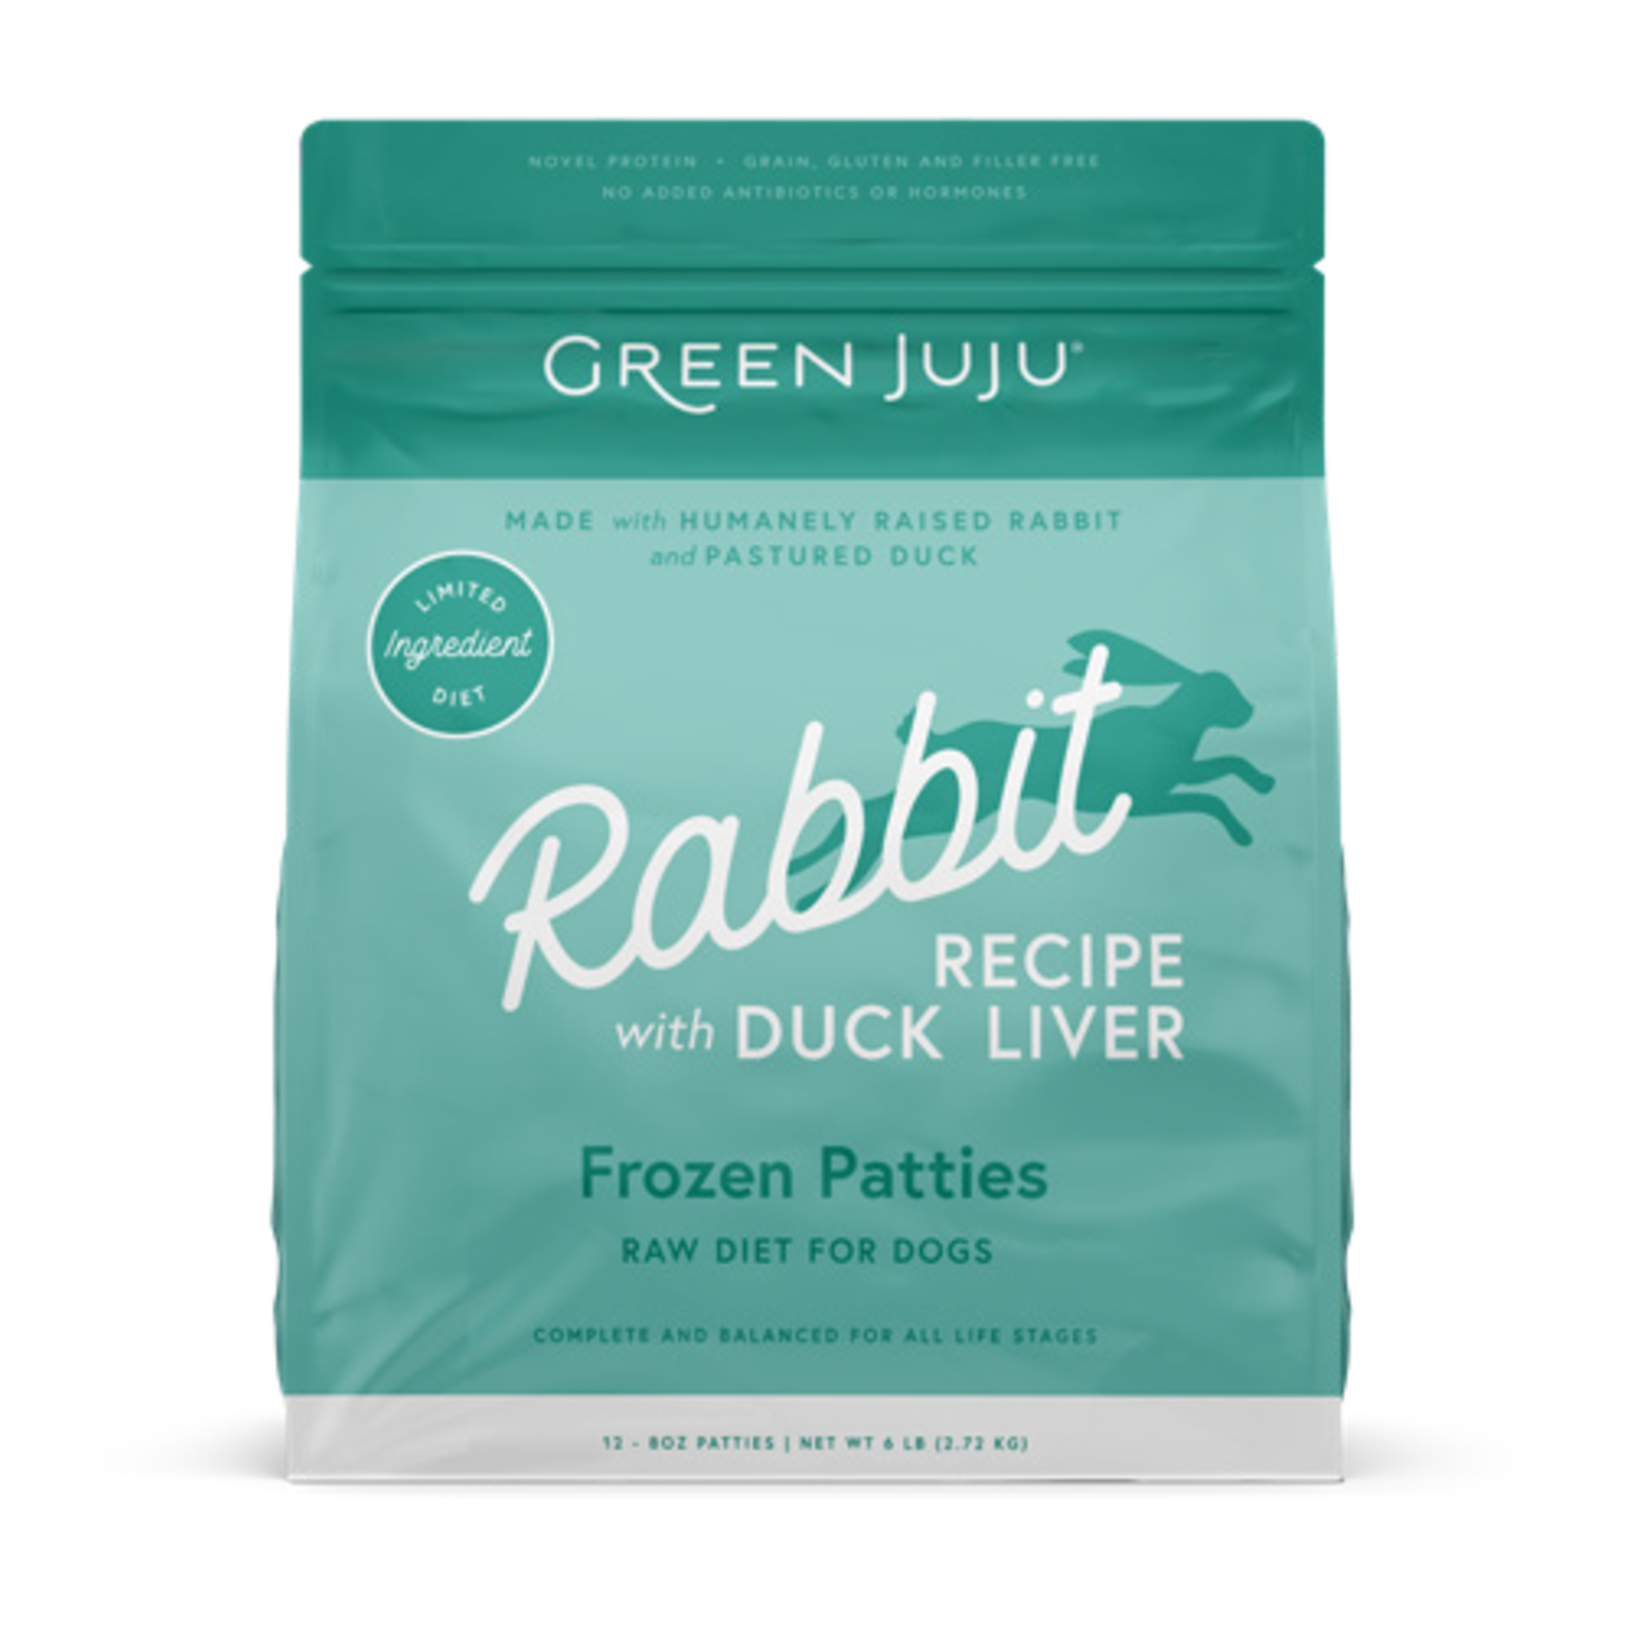 Green Juju Green Juju Frozen Patties - Rabbit Recipe Raw Diet